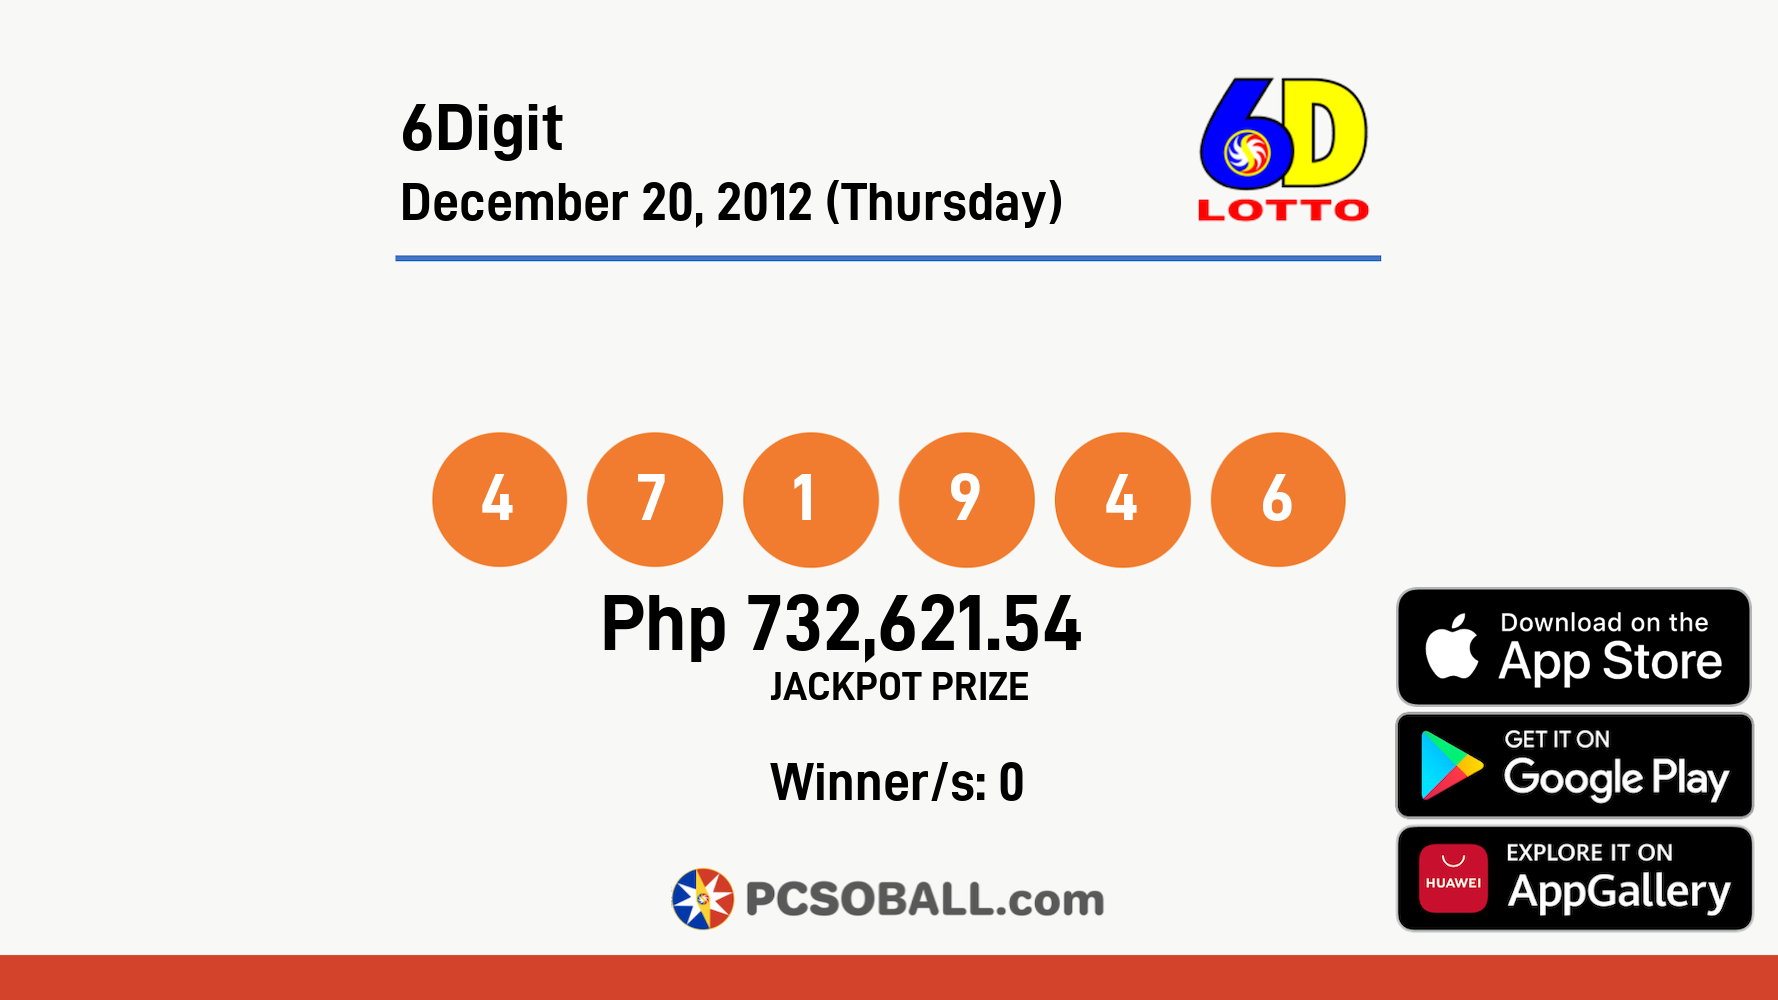 6Digit December 20, 2012 (Thursday) Result